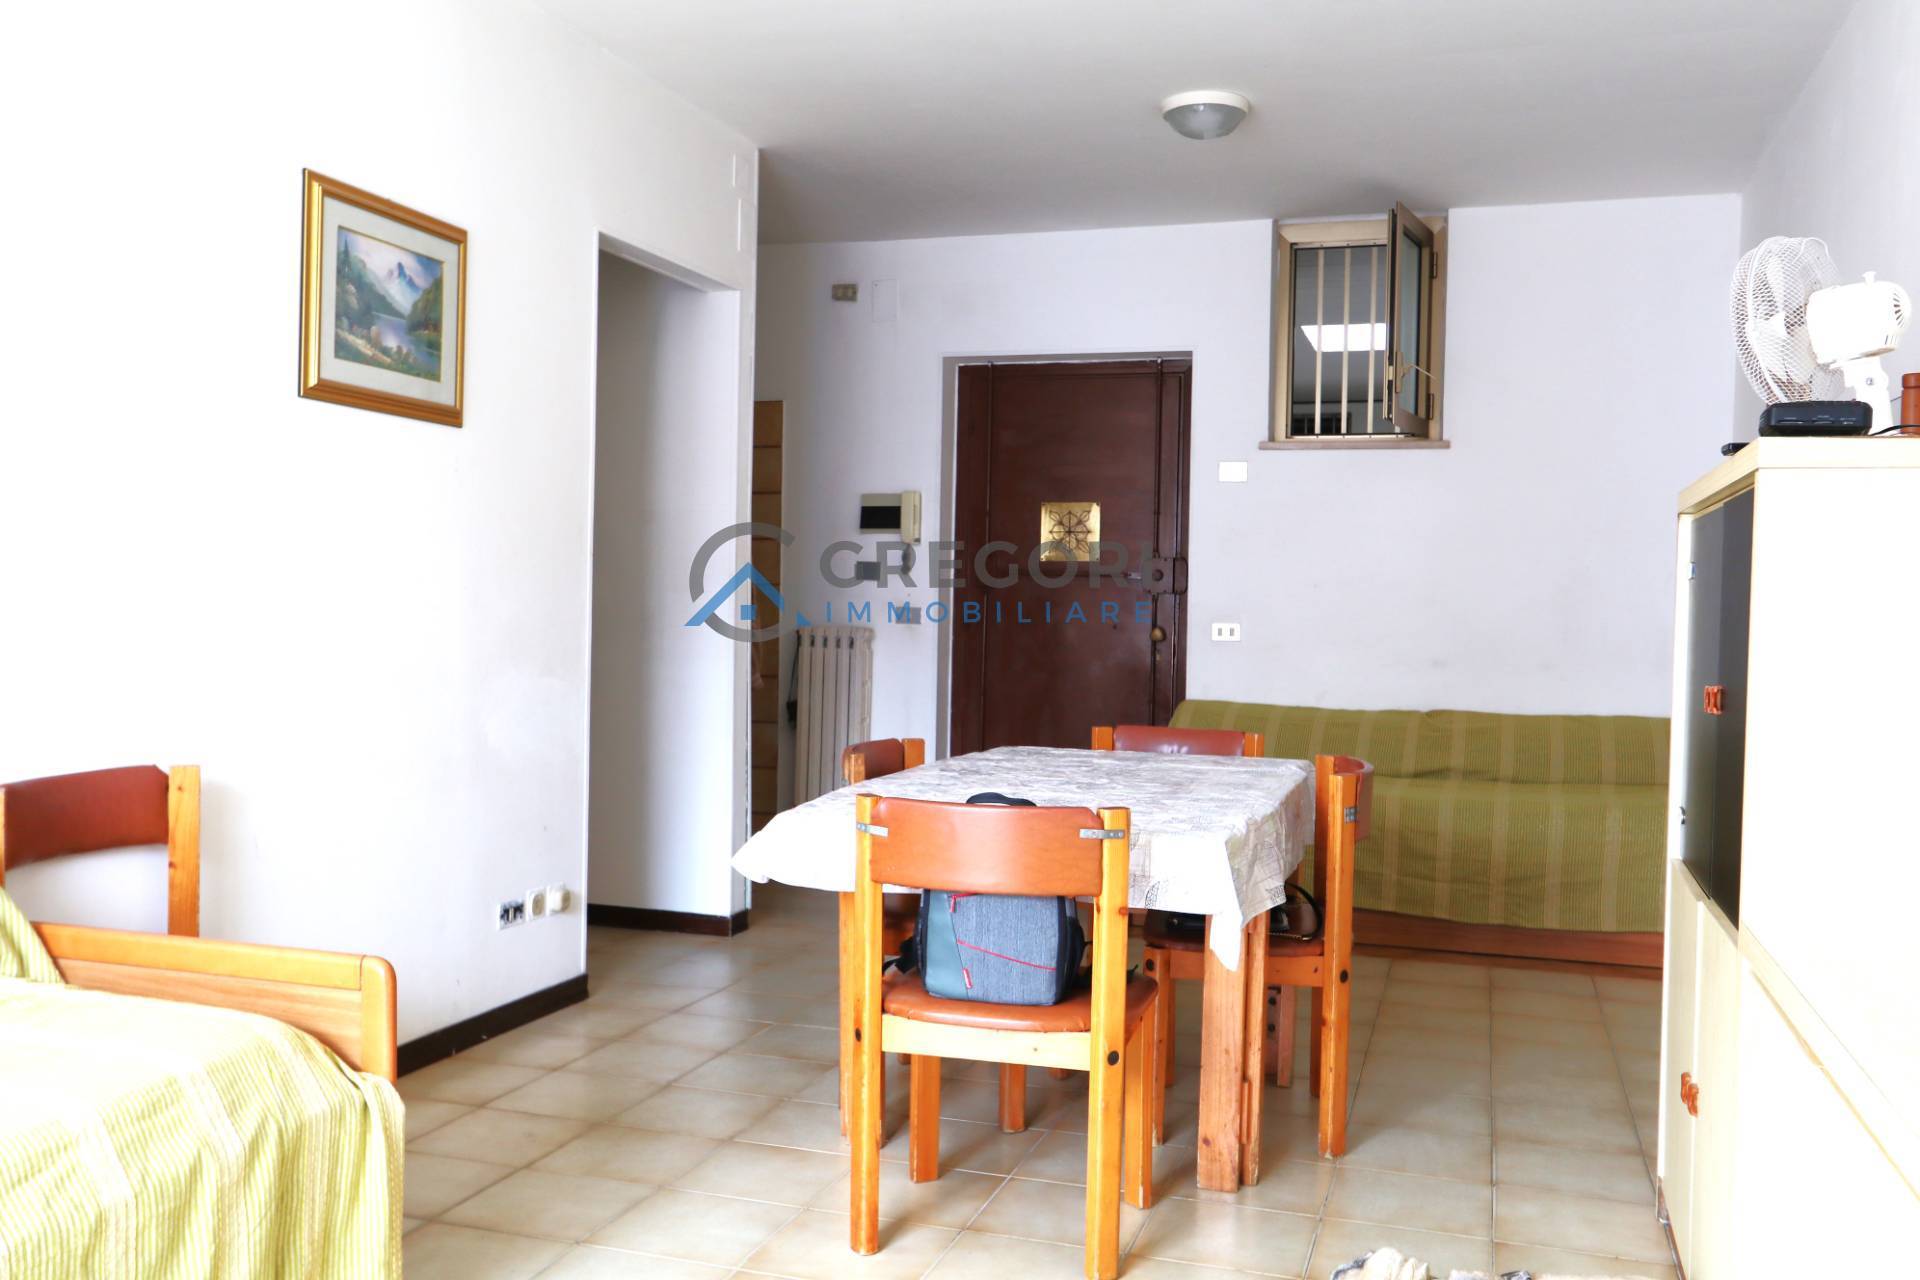 Appartamento in vendita a Martinsicuro, 3 locali, zona Località: ZonaMare, prezzo € 128.000 | PortaleAgenzieImmobiliari.it